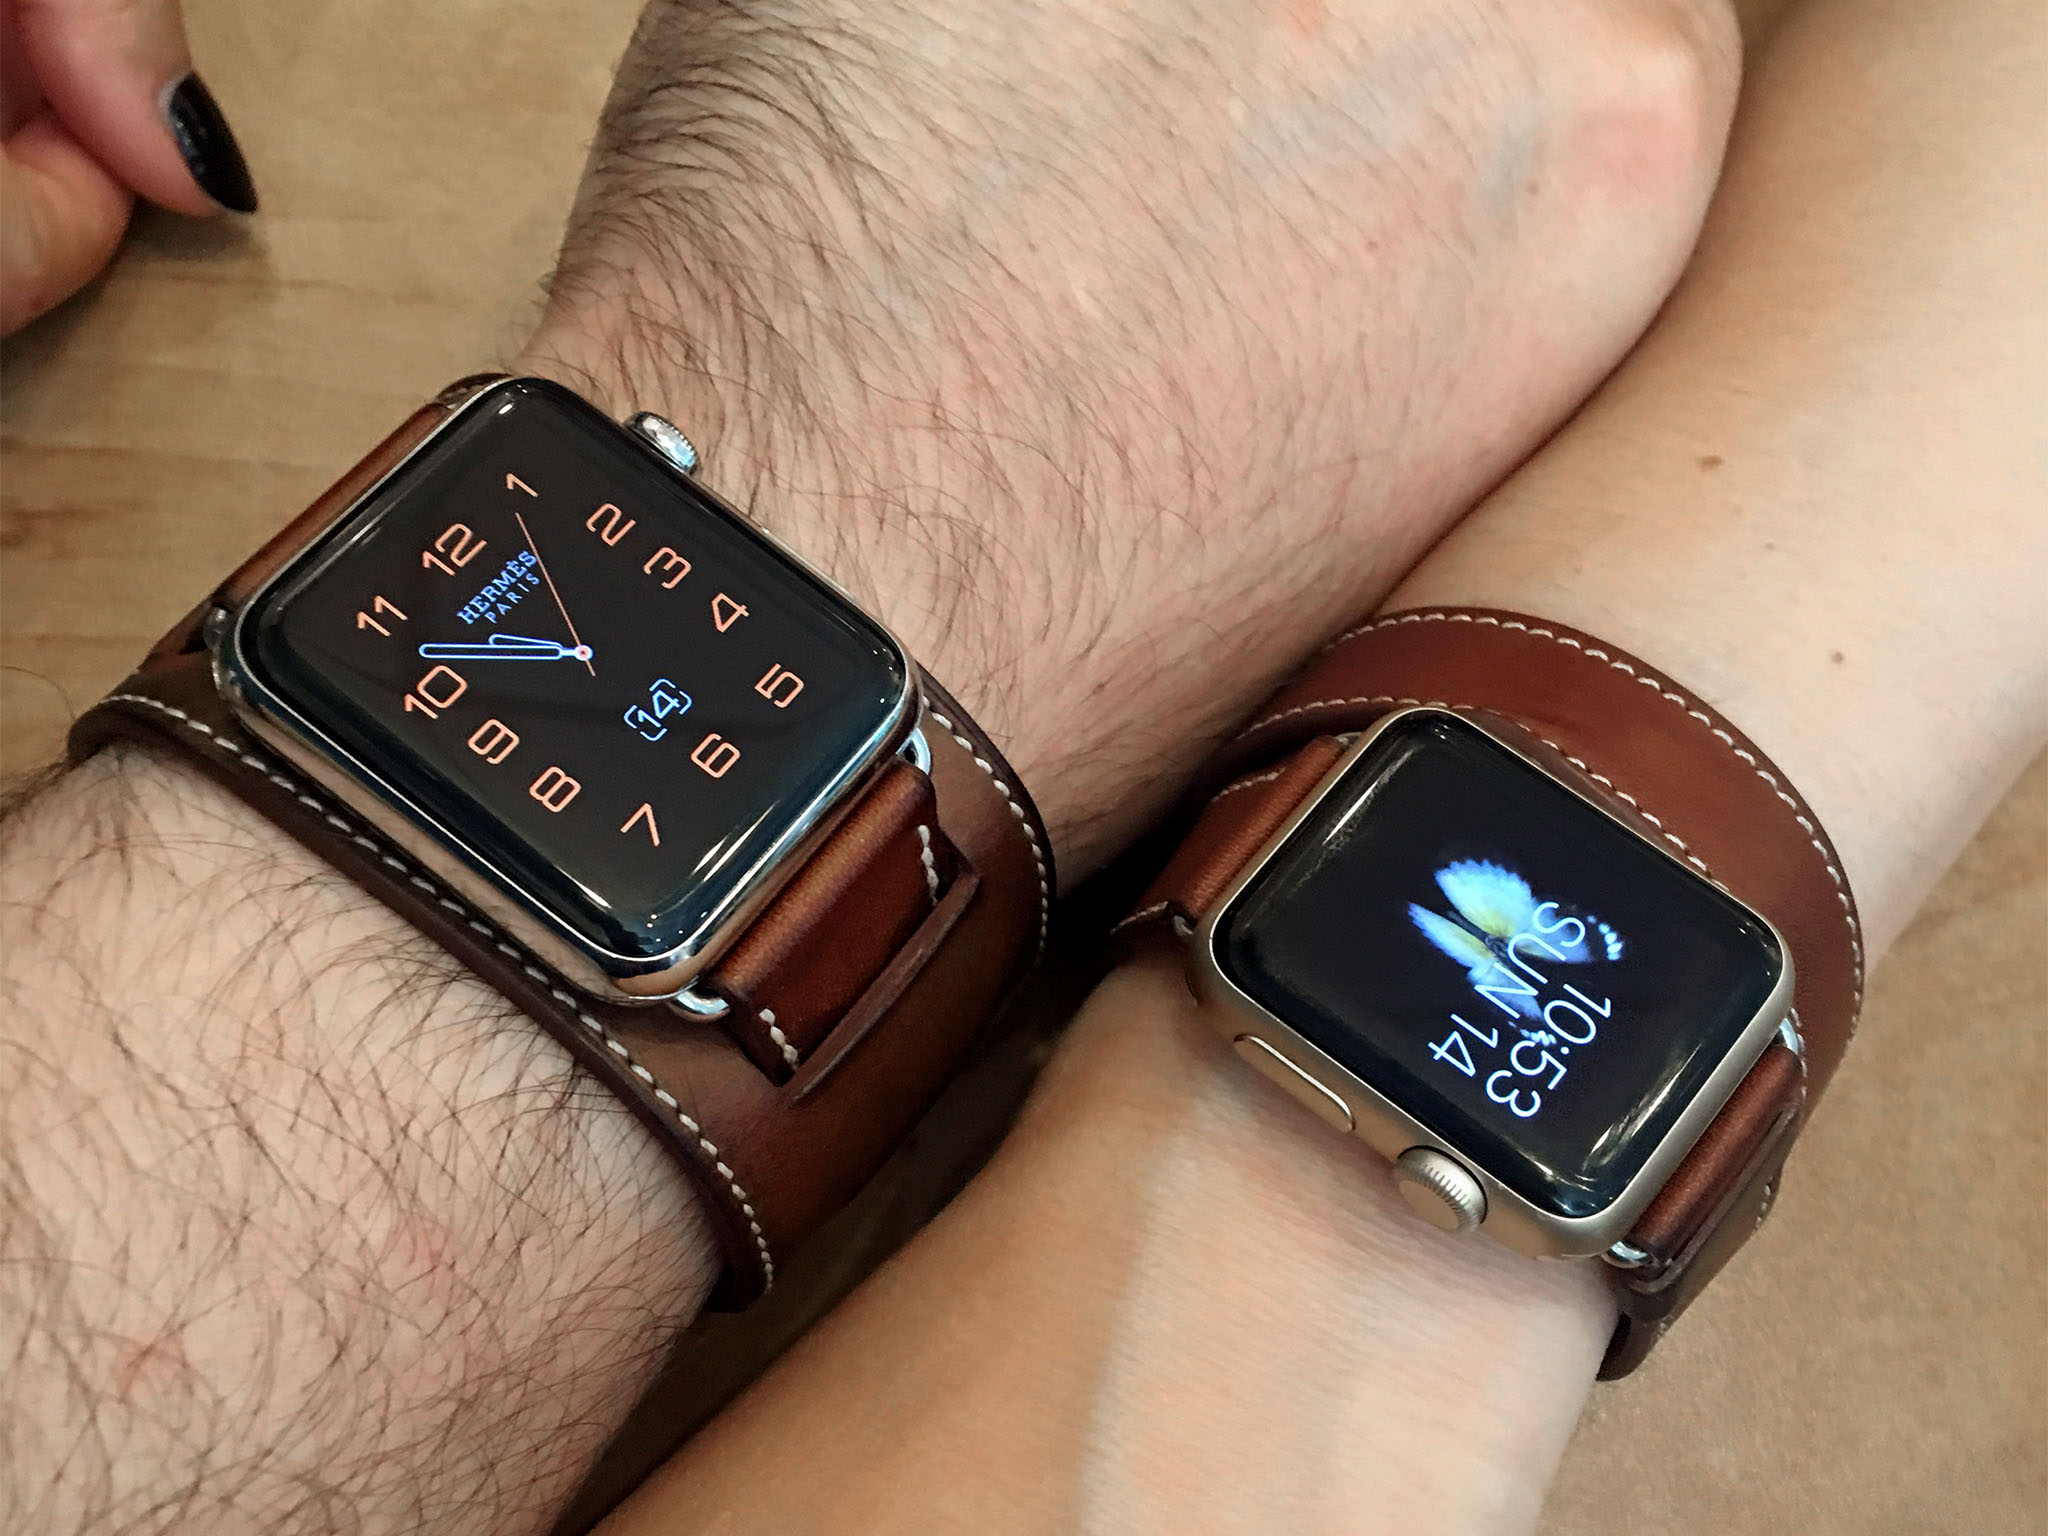 Apple watch 38mm vs 42mm